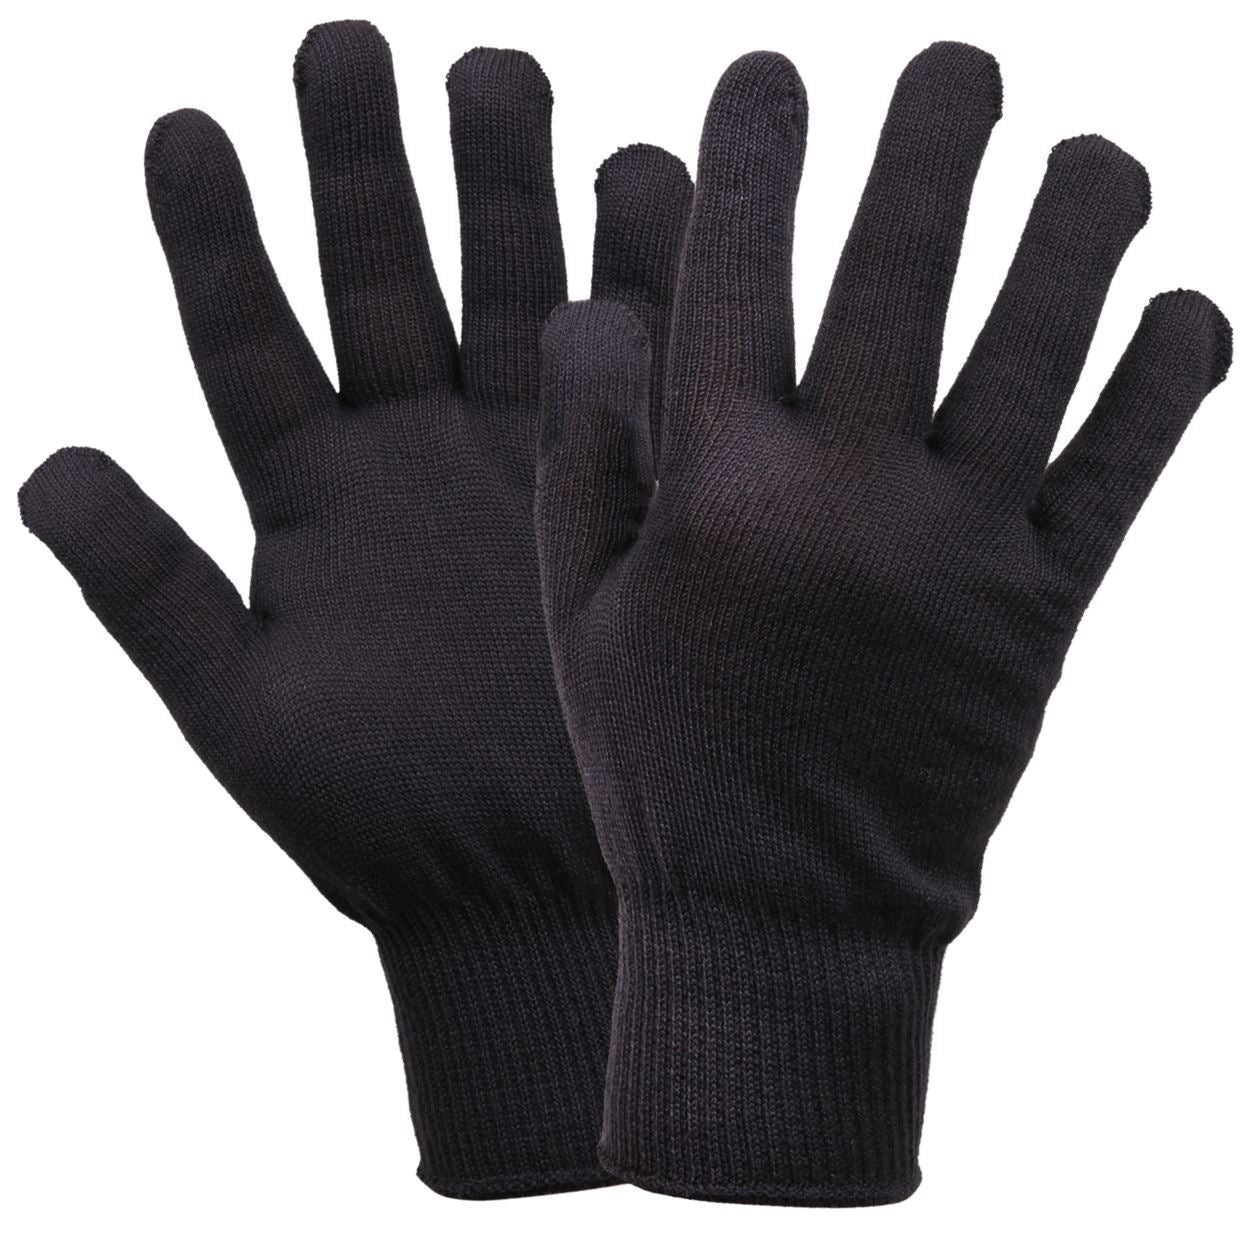 Tactical G.I. Polypropylene Glove Liners - Black (5 Per Pack)